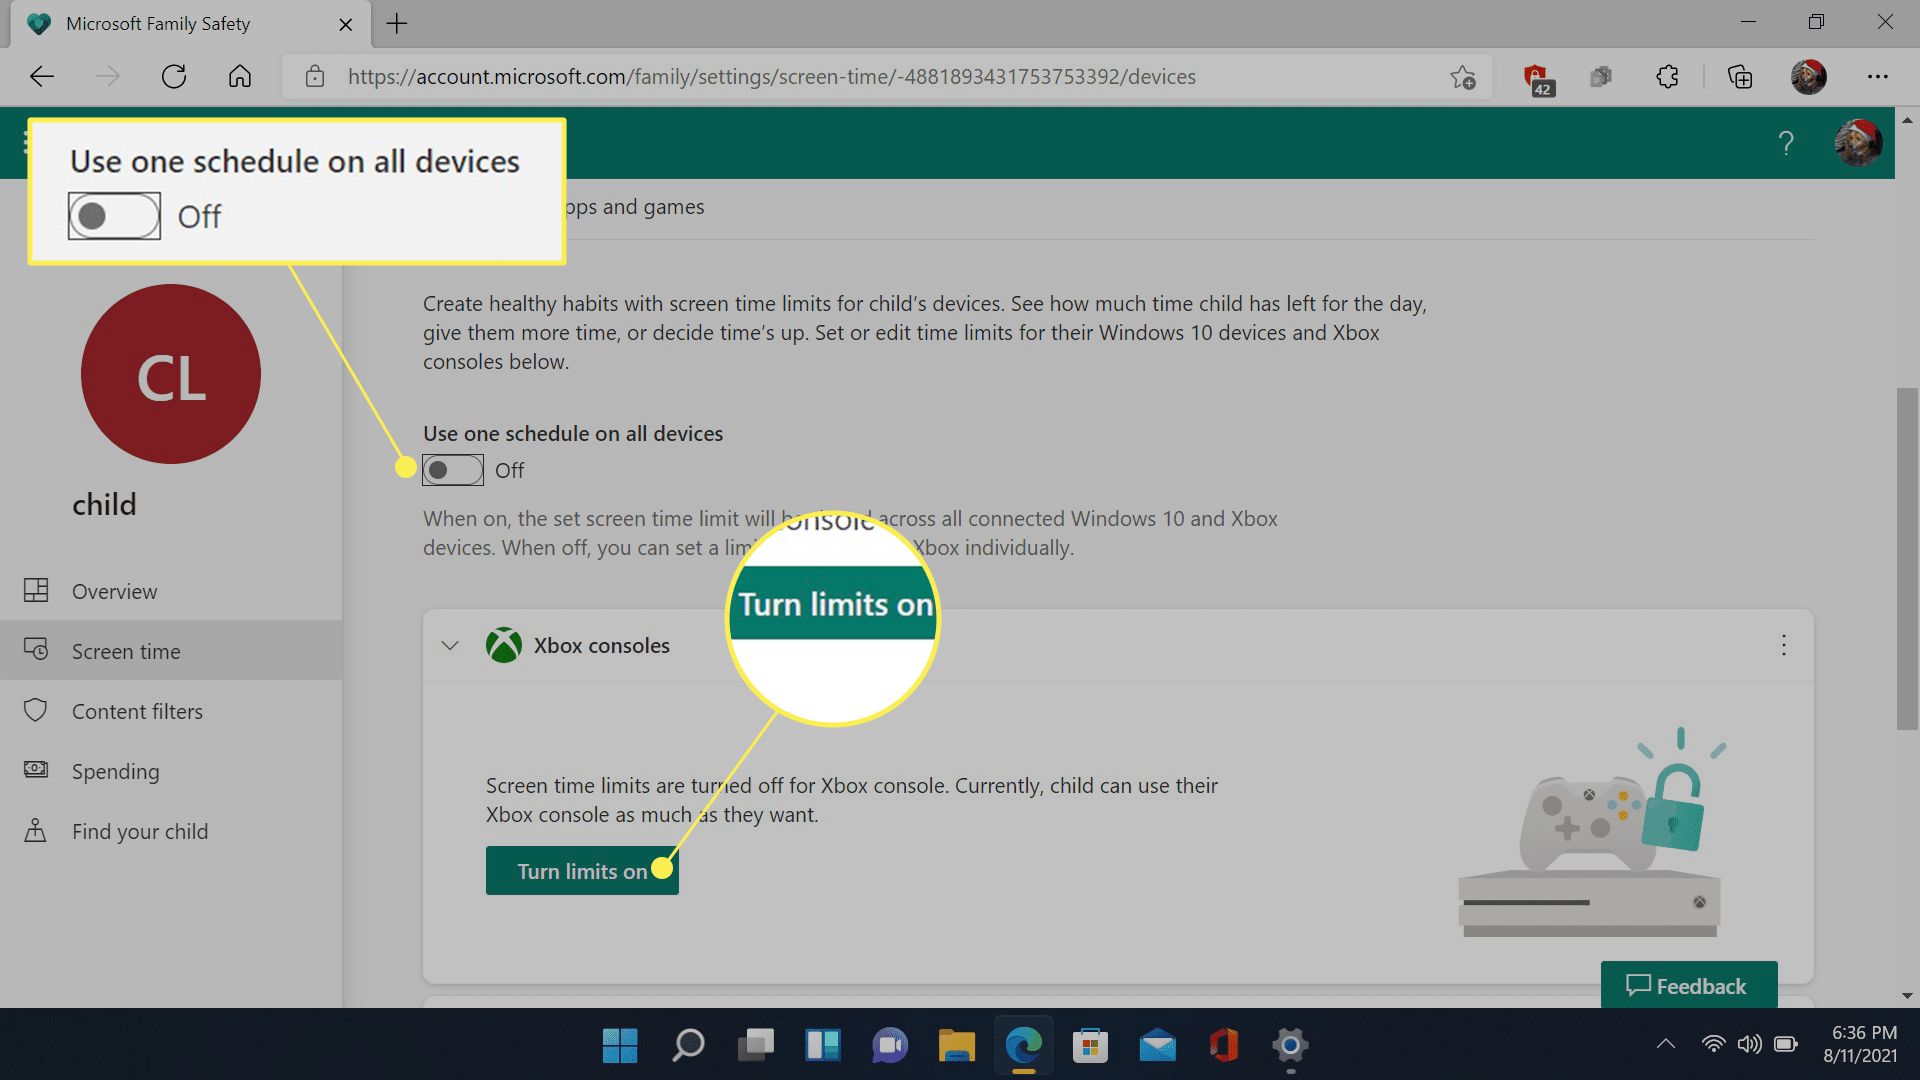 "Ota rajoitukset käyttöön" ja "Käytä yhtä aikataulua kaikissa laitteissa" merkitty Microsoft Family Safety -sivustolla.